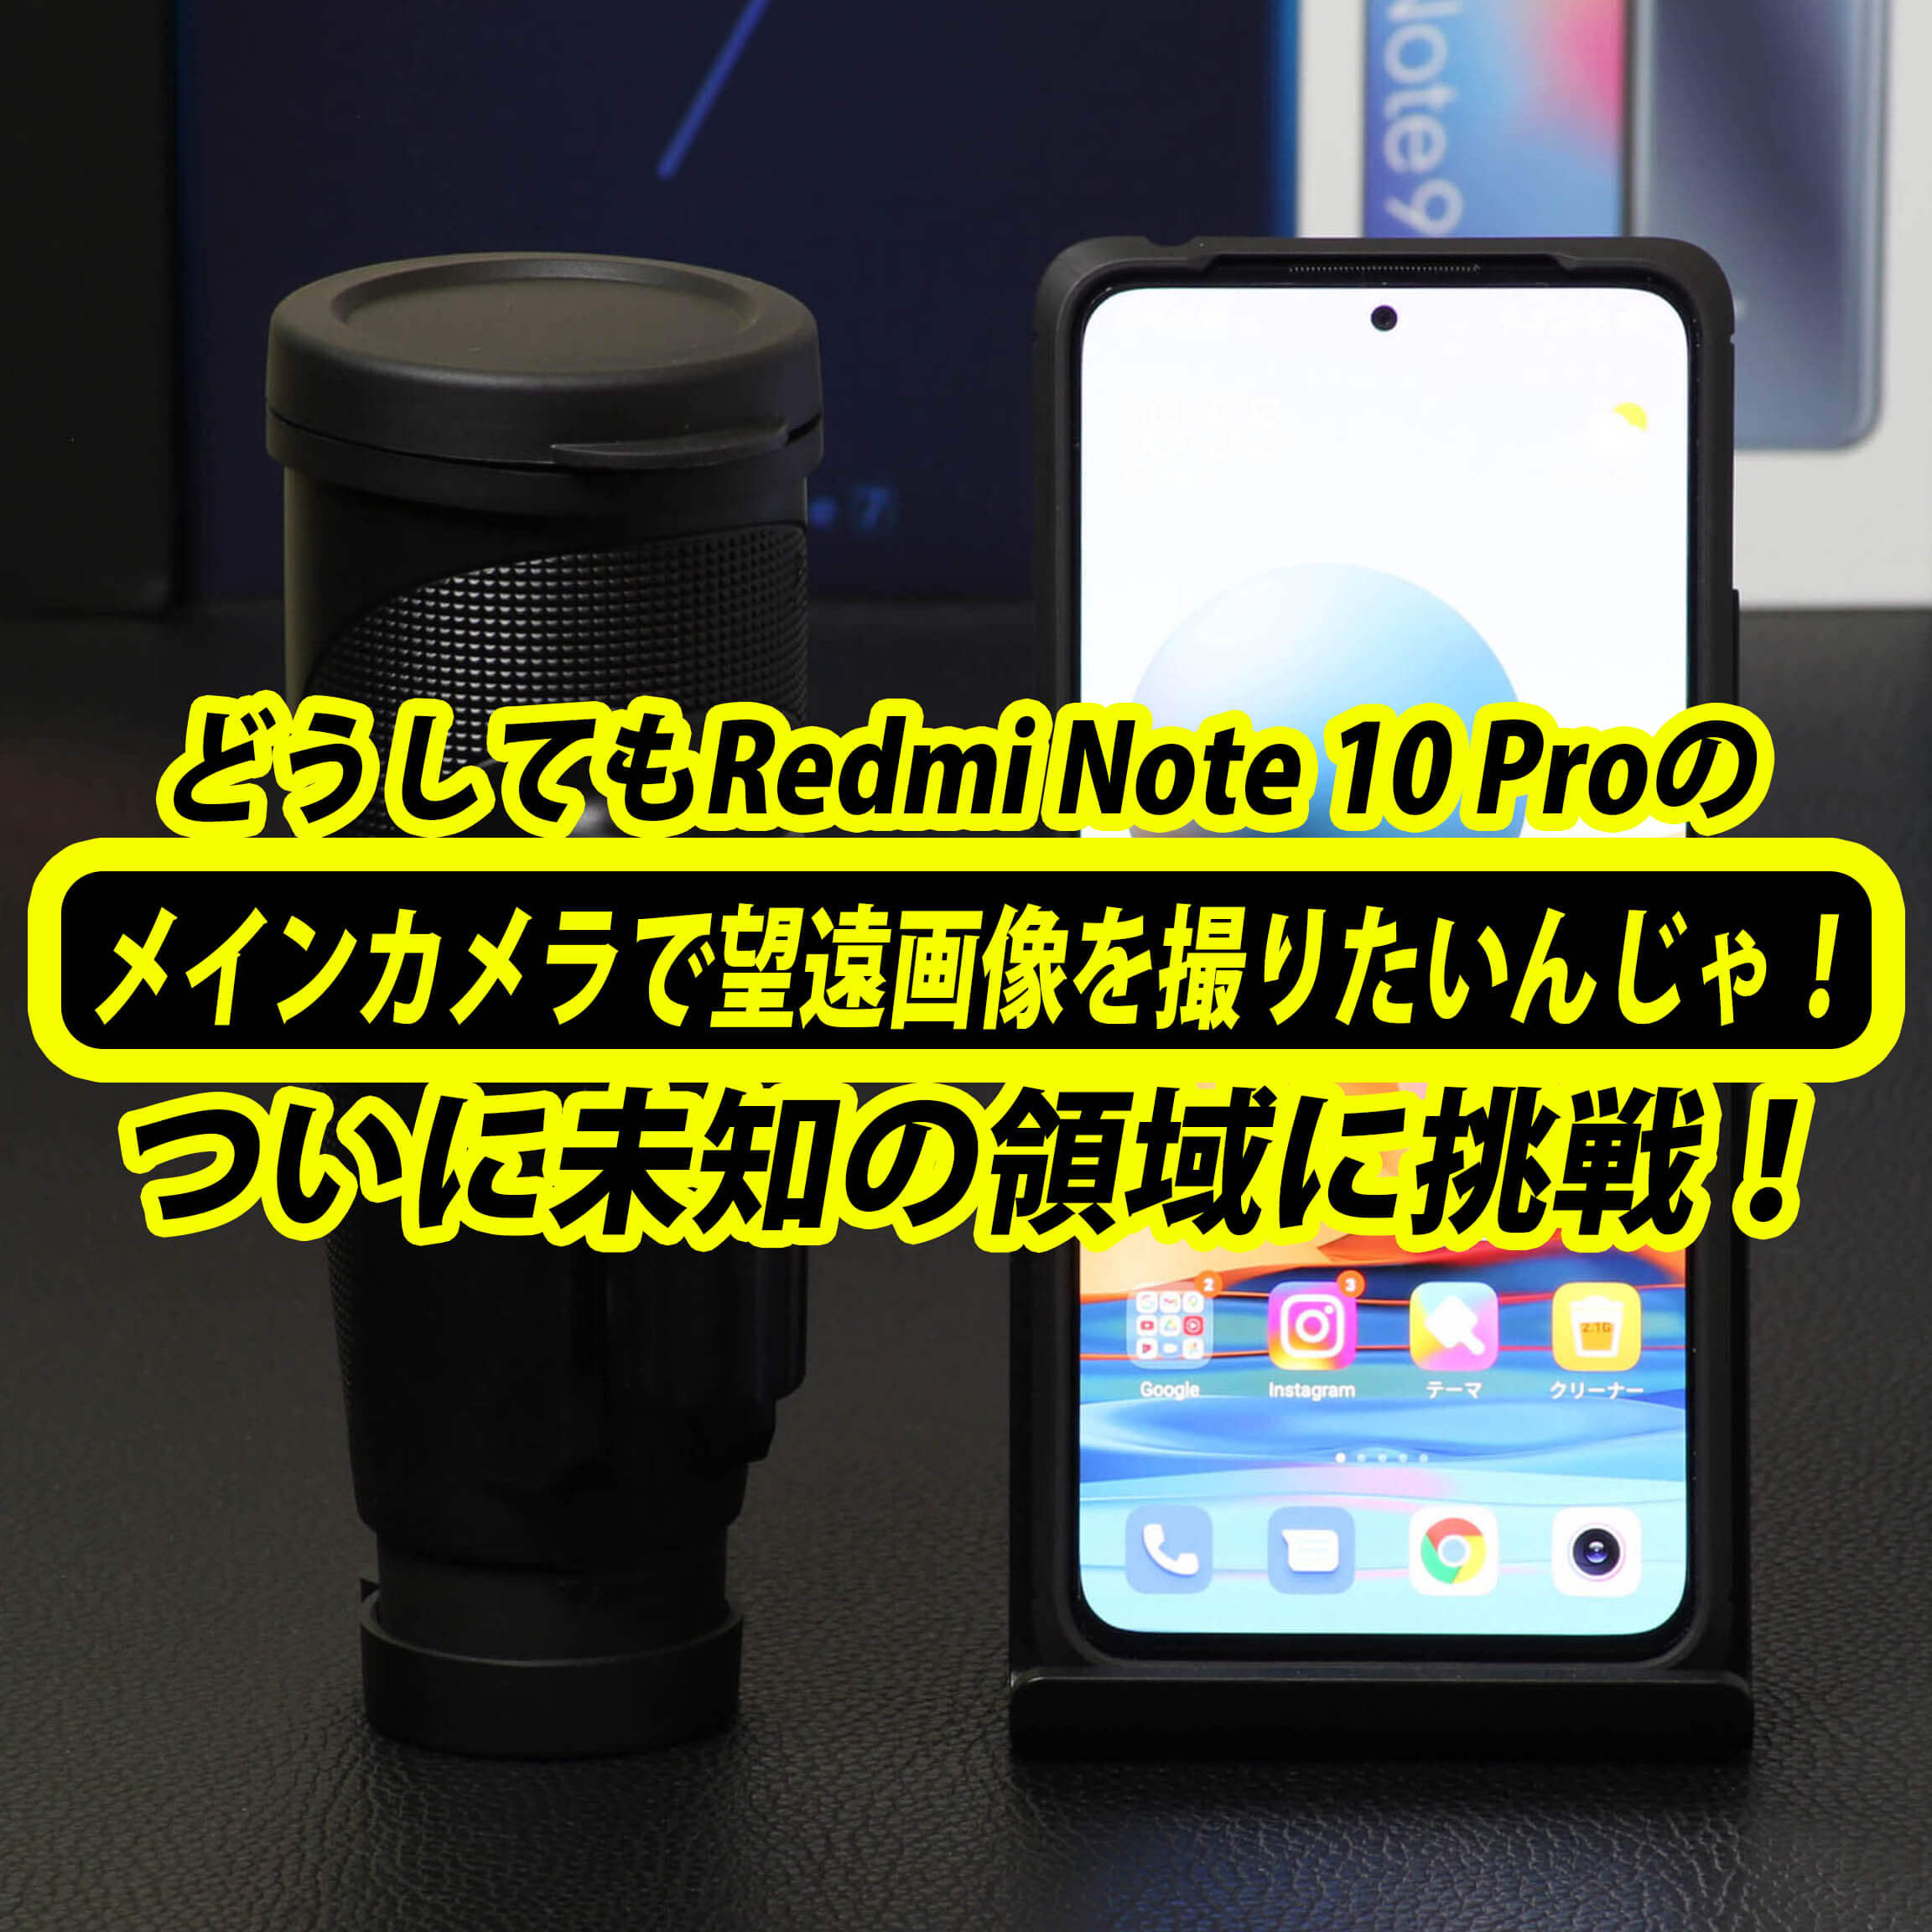 どうしてもRedmi Note 10 Proのメインカメラで望遠画像を撮りたいんじゃ！アレ導入で自分史上未知の領域に！